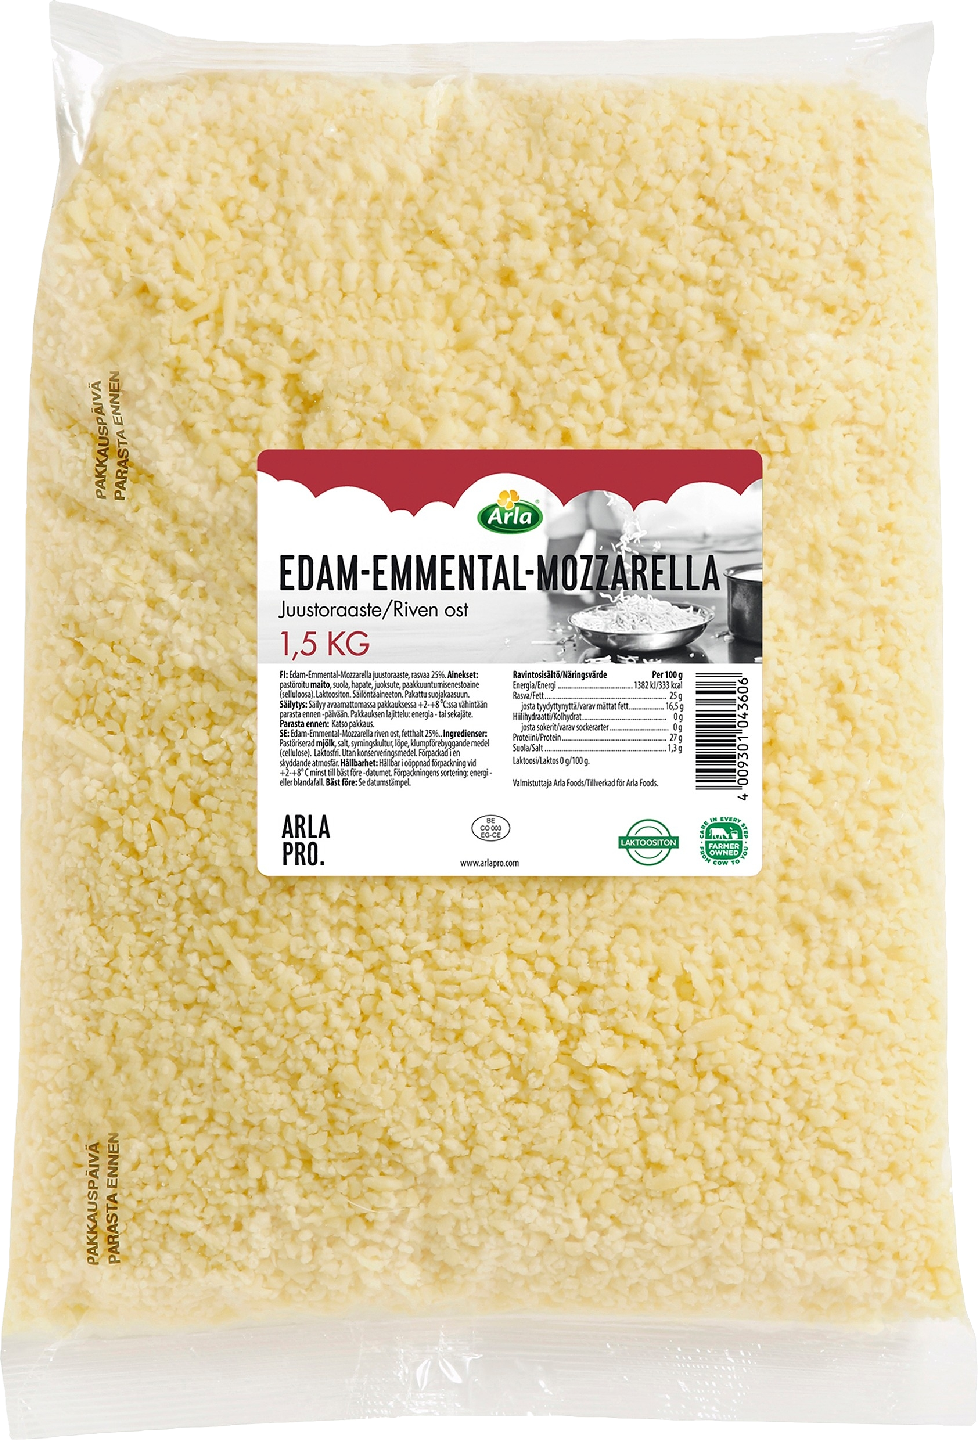 Arla Pro 1,5 kg 25% edam-emmental-mozzarella juustoraaste laktoositon